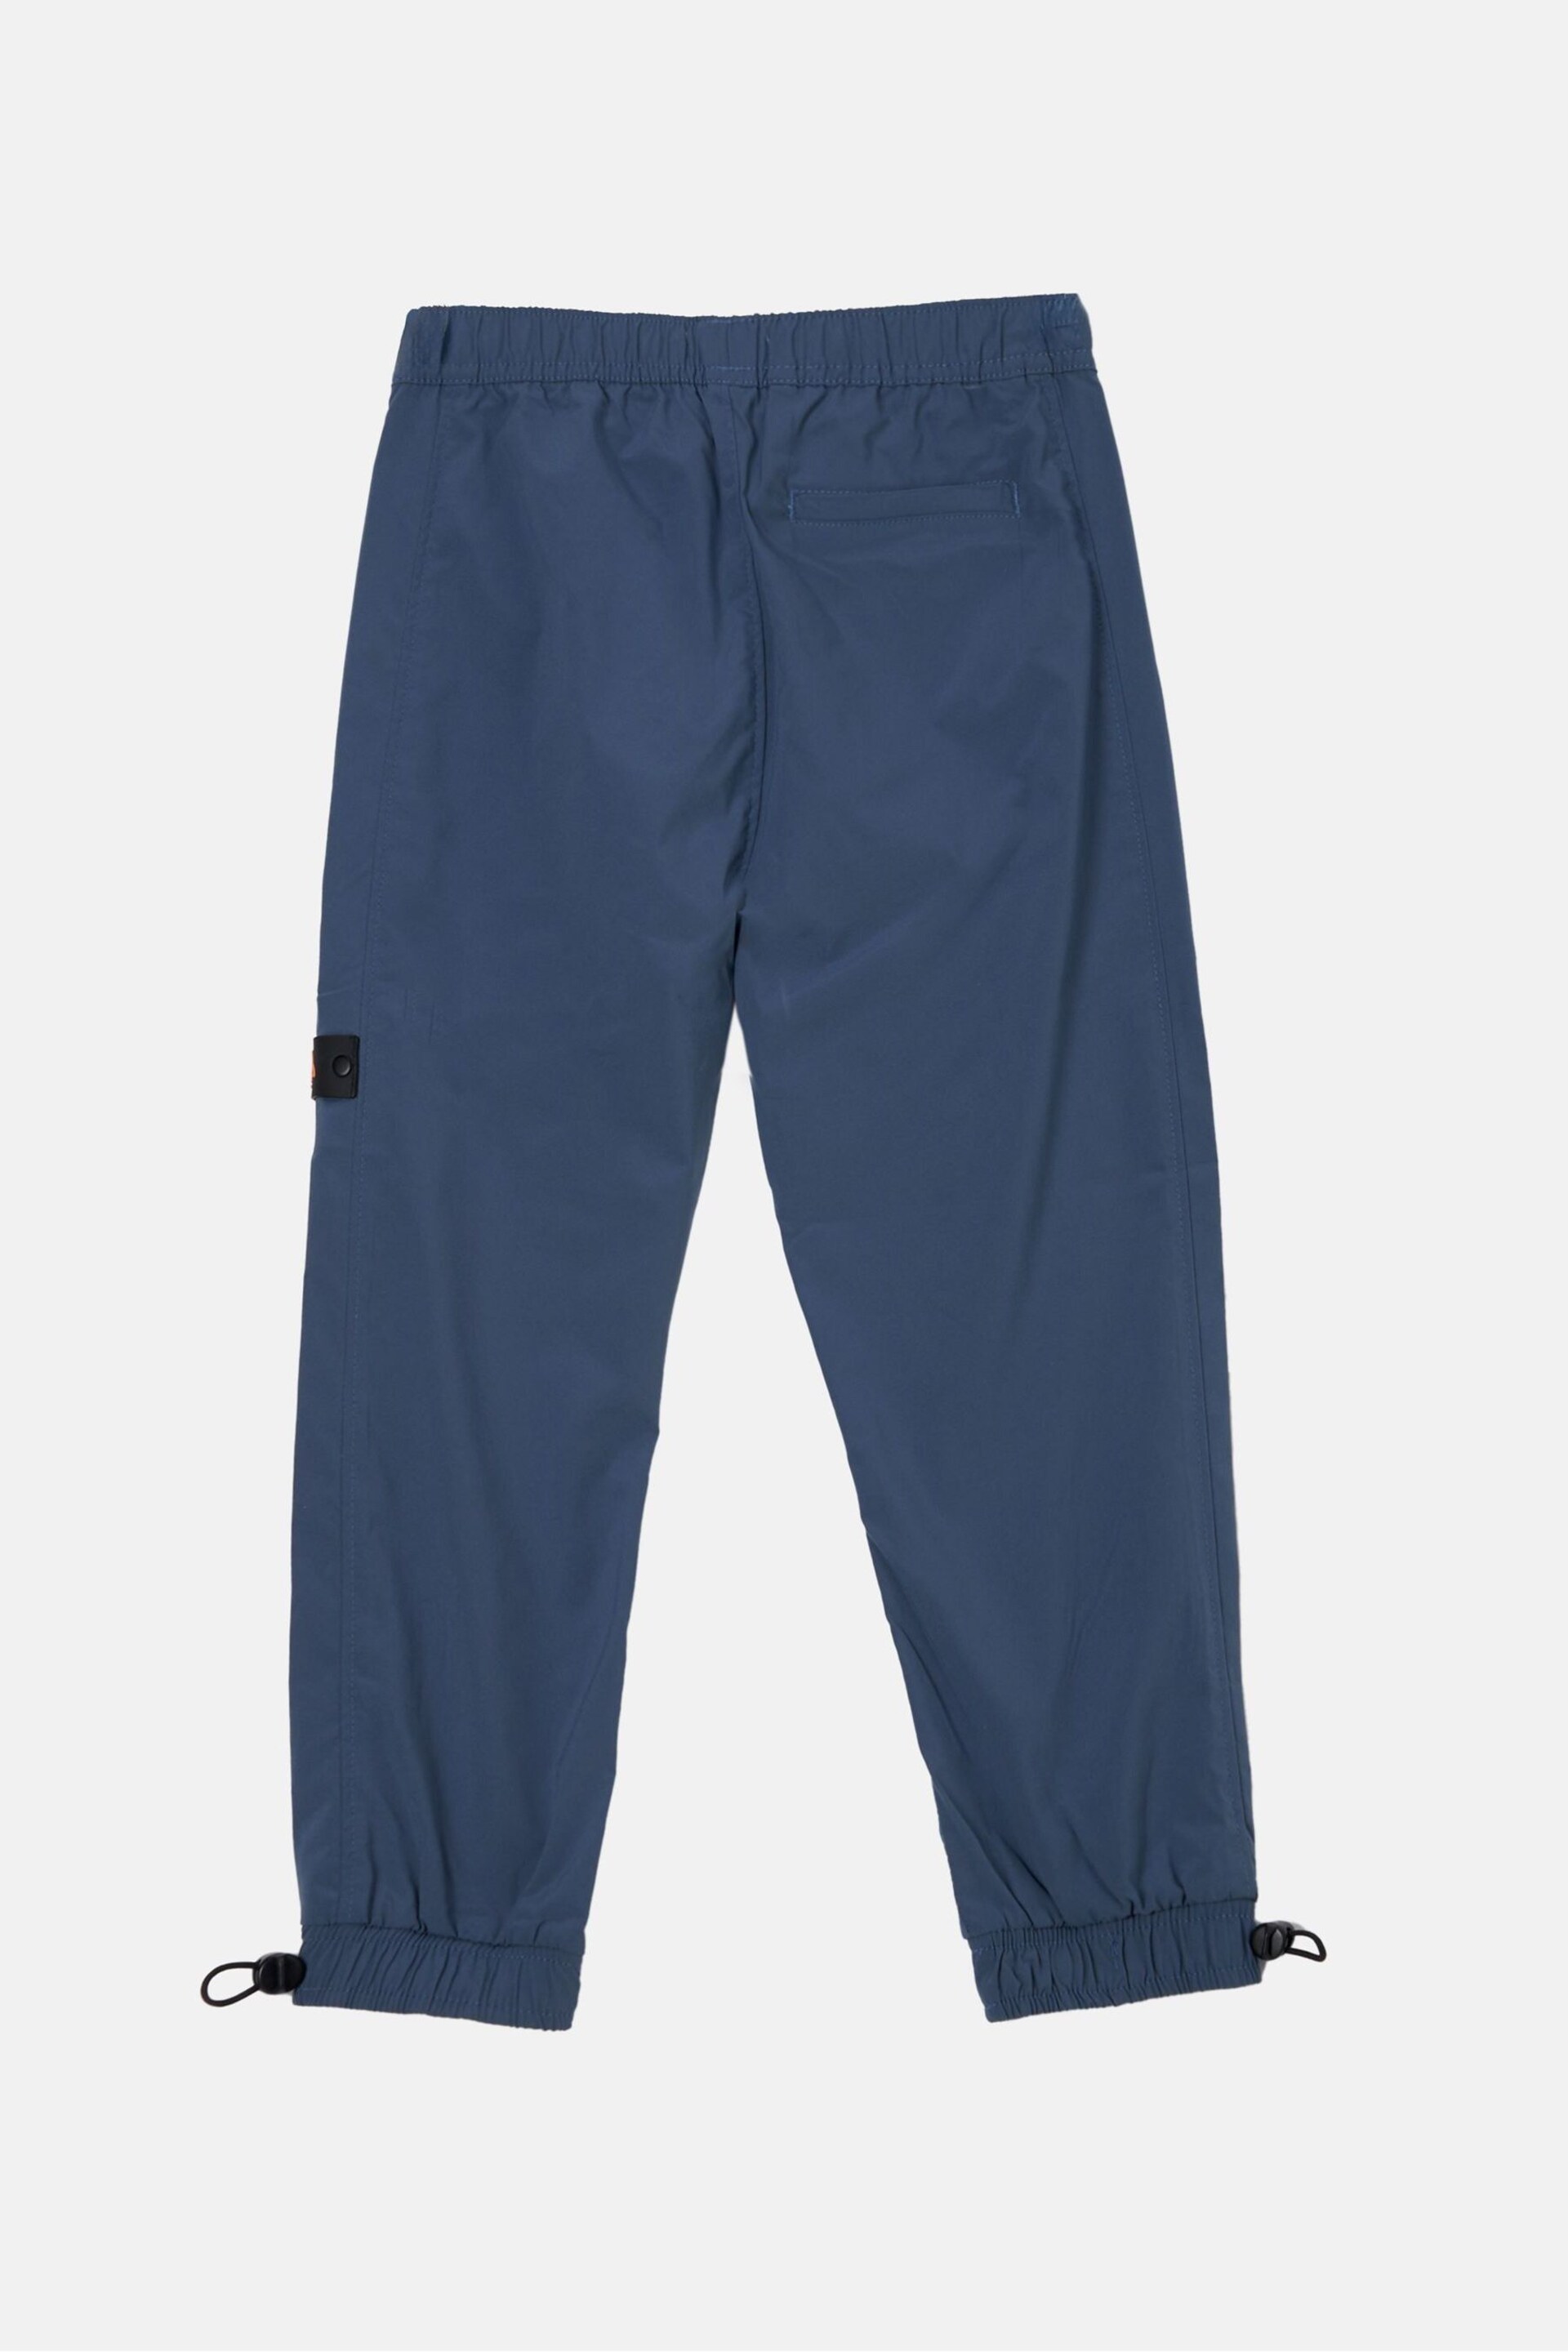 Angel & Rocket Blue Finn Stretch Poplin Trousers - Image 5 of 6